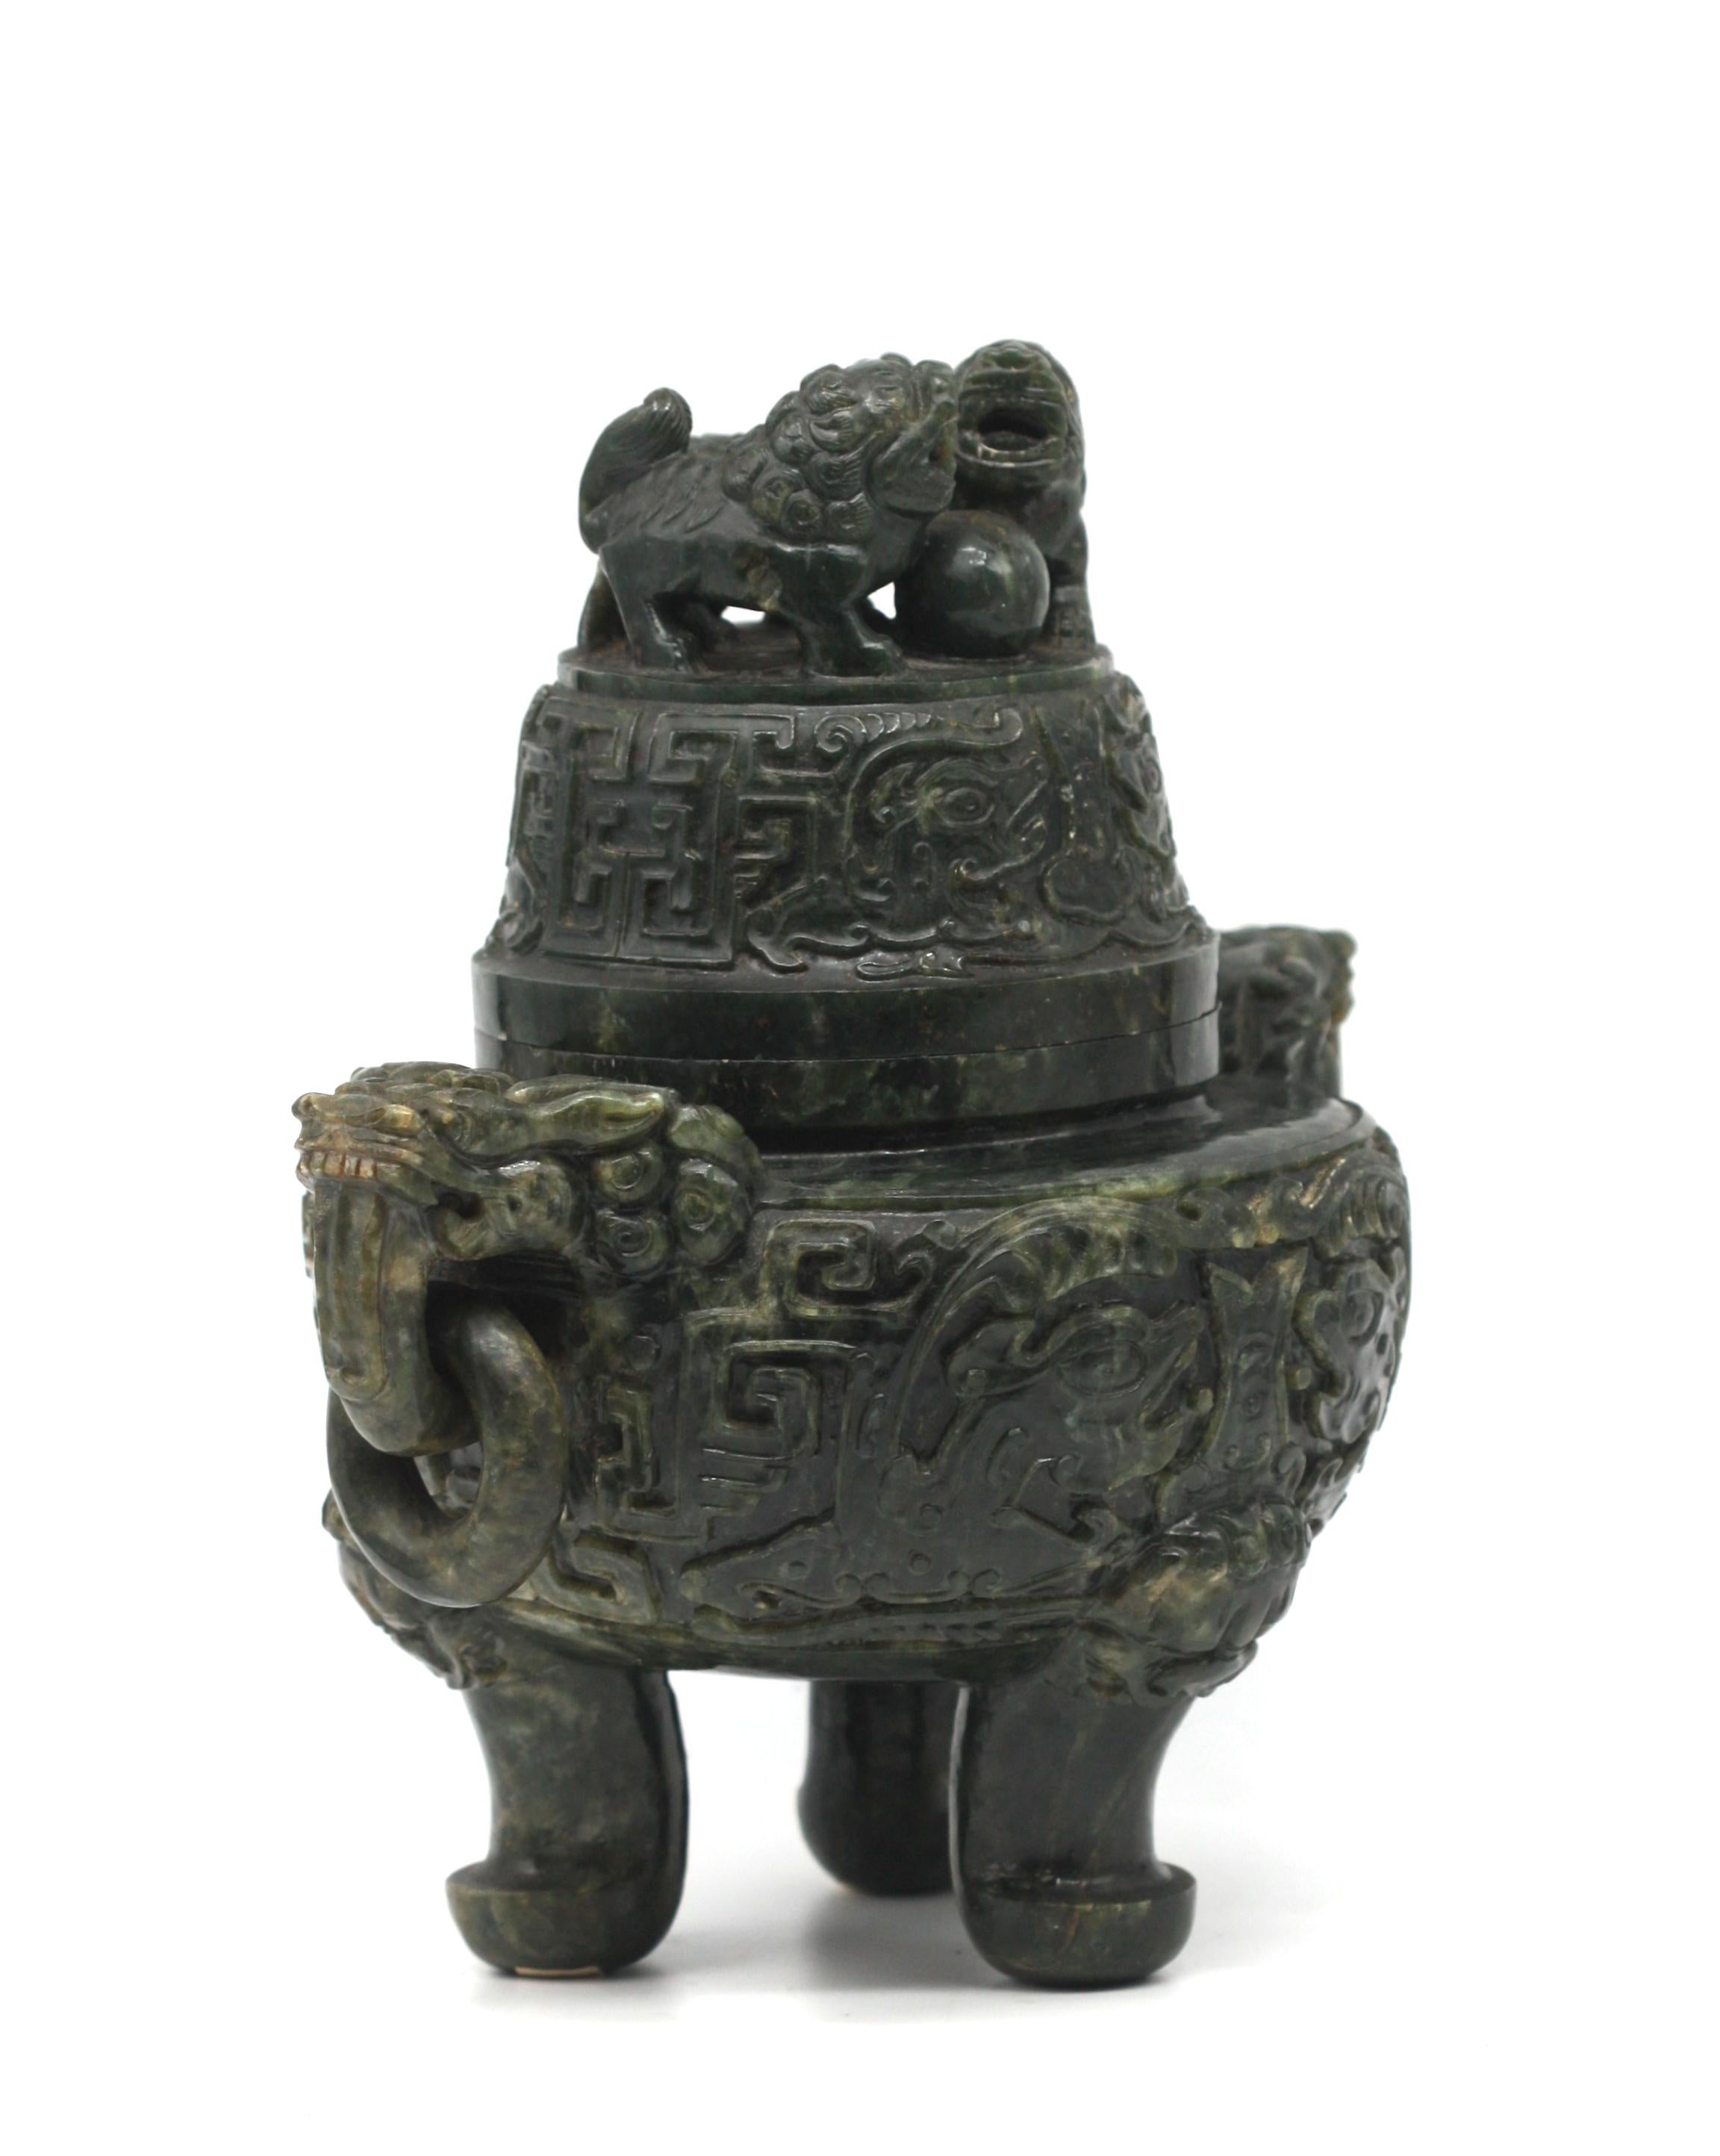 
Chinesischer Spinat Jade bedeckt Stativ Zensor 
Darstellung eines archaischen Bronzegefäßes, runder Korpus mit ausladenden Maskenhenkeln mit losen Ringen, Korpus mit reliefierten Marken und Schnecken, auf zylindrischen Beinen mit abgerundeten